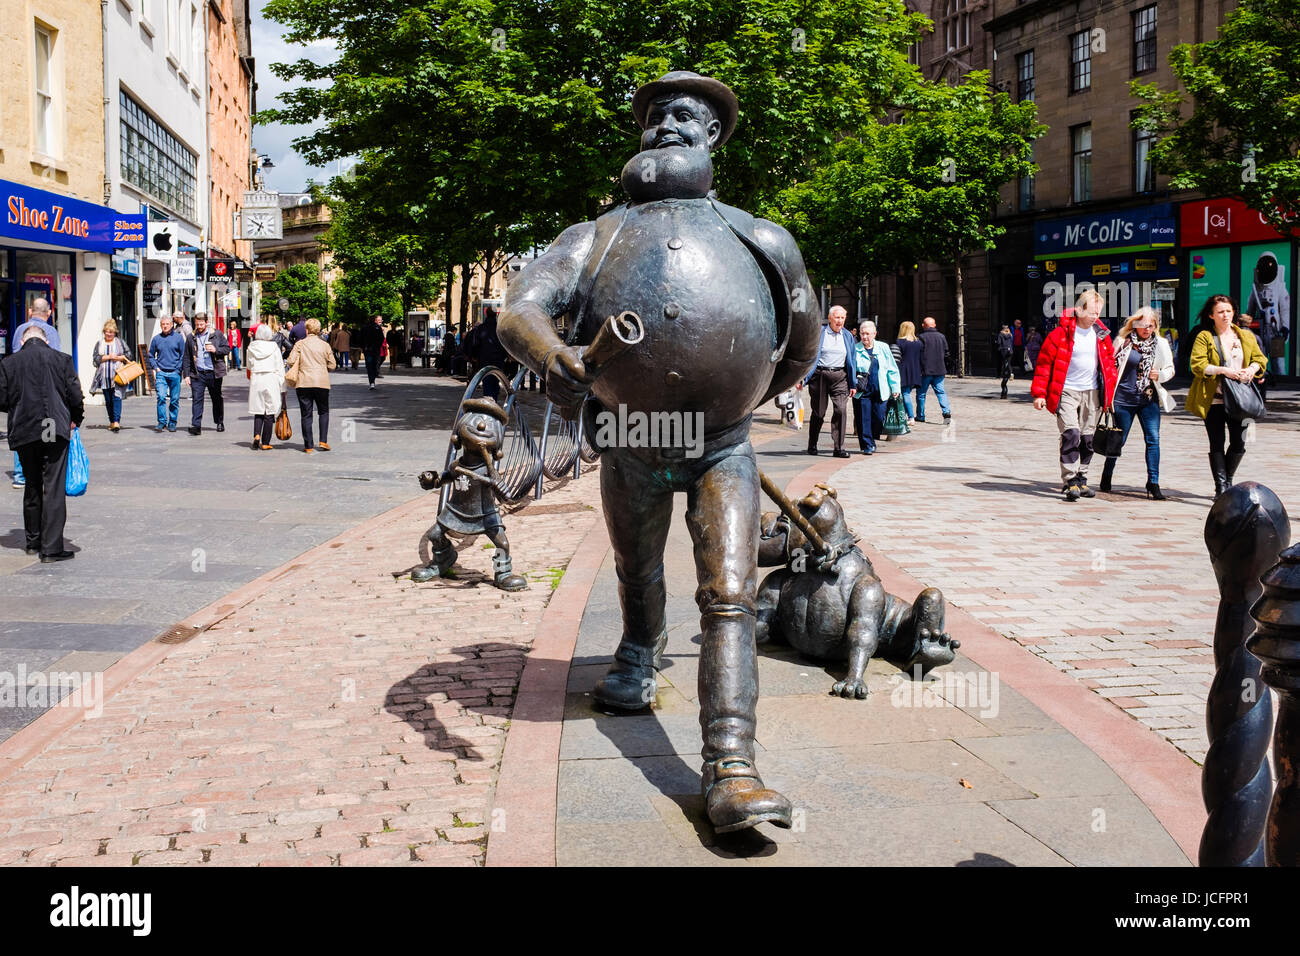 Statua di carattere comico Desperate Dan nel centro di Dundee, Scozia Foto Stock